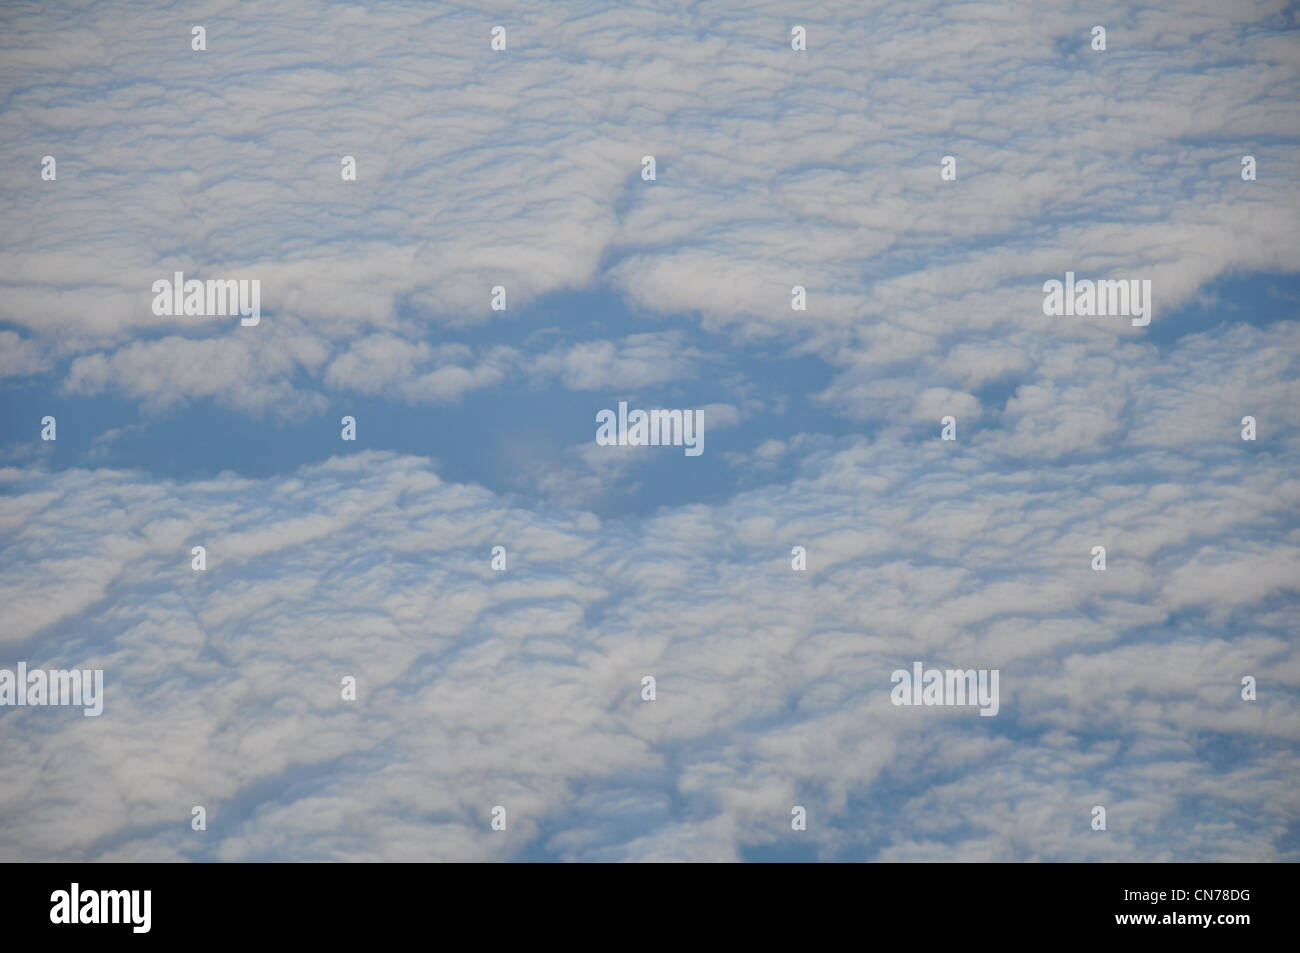 Las nubes y el mar visto en 38000 pies de altura Foto de stock